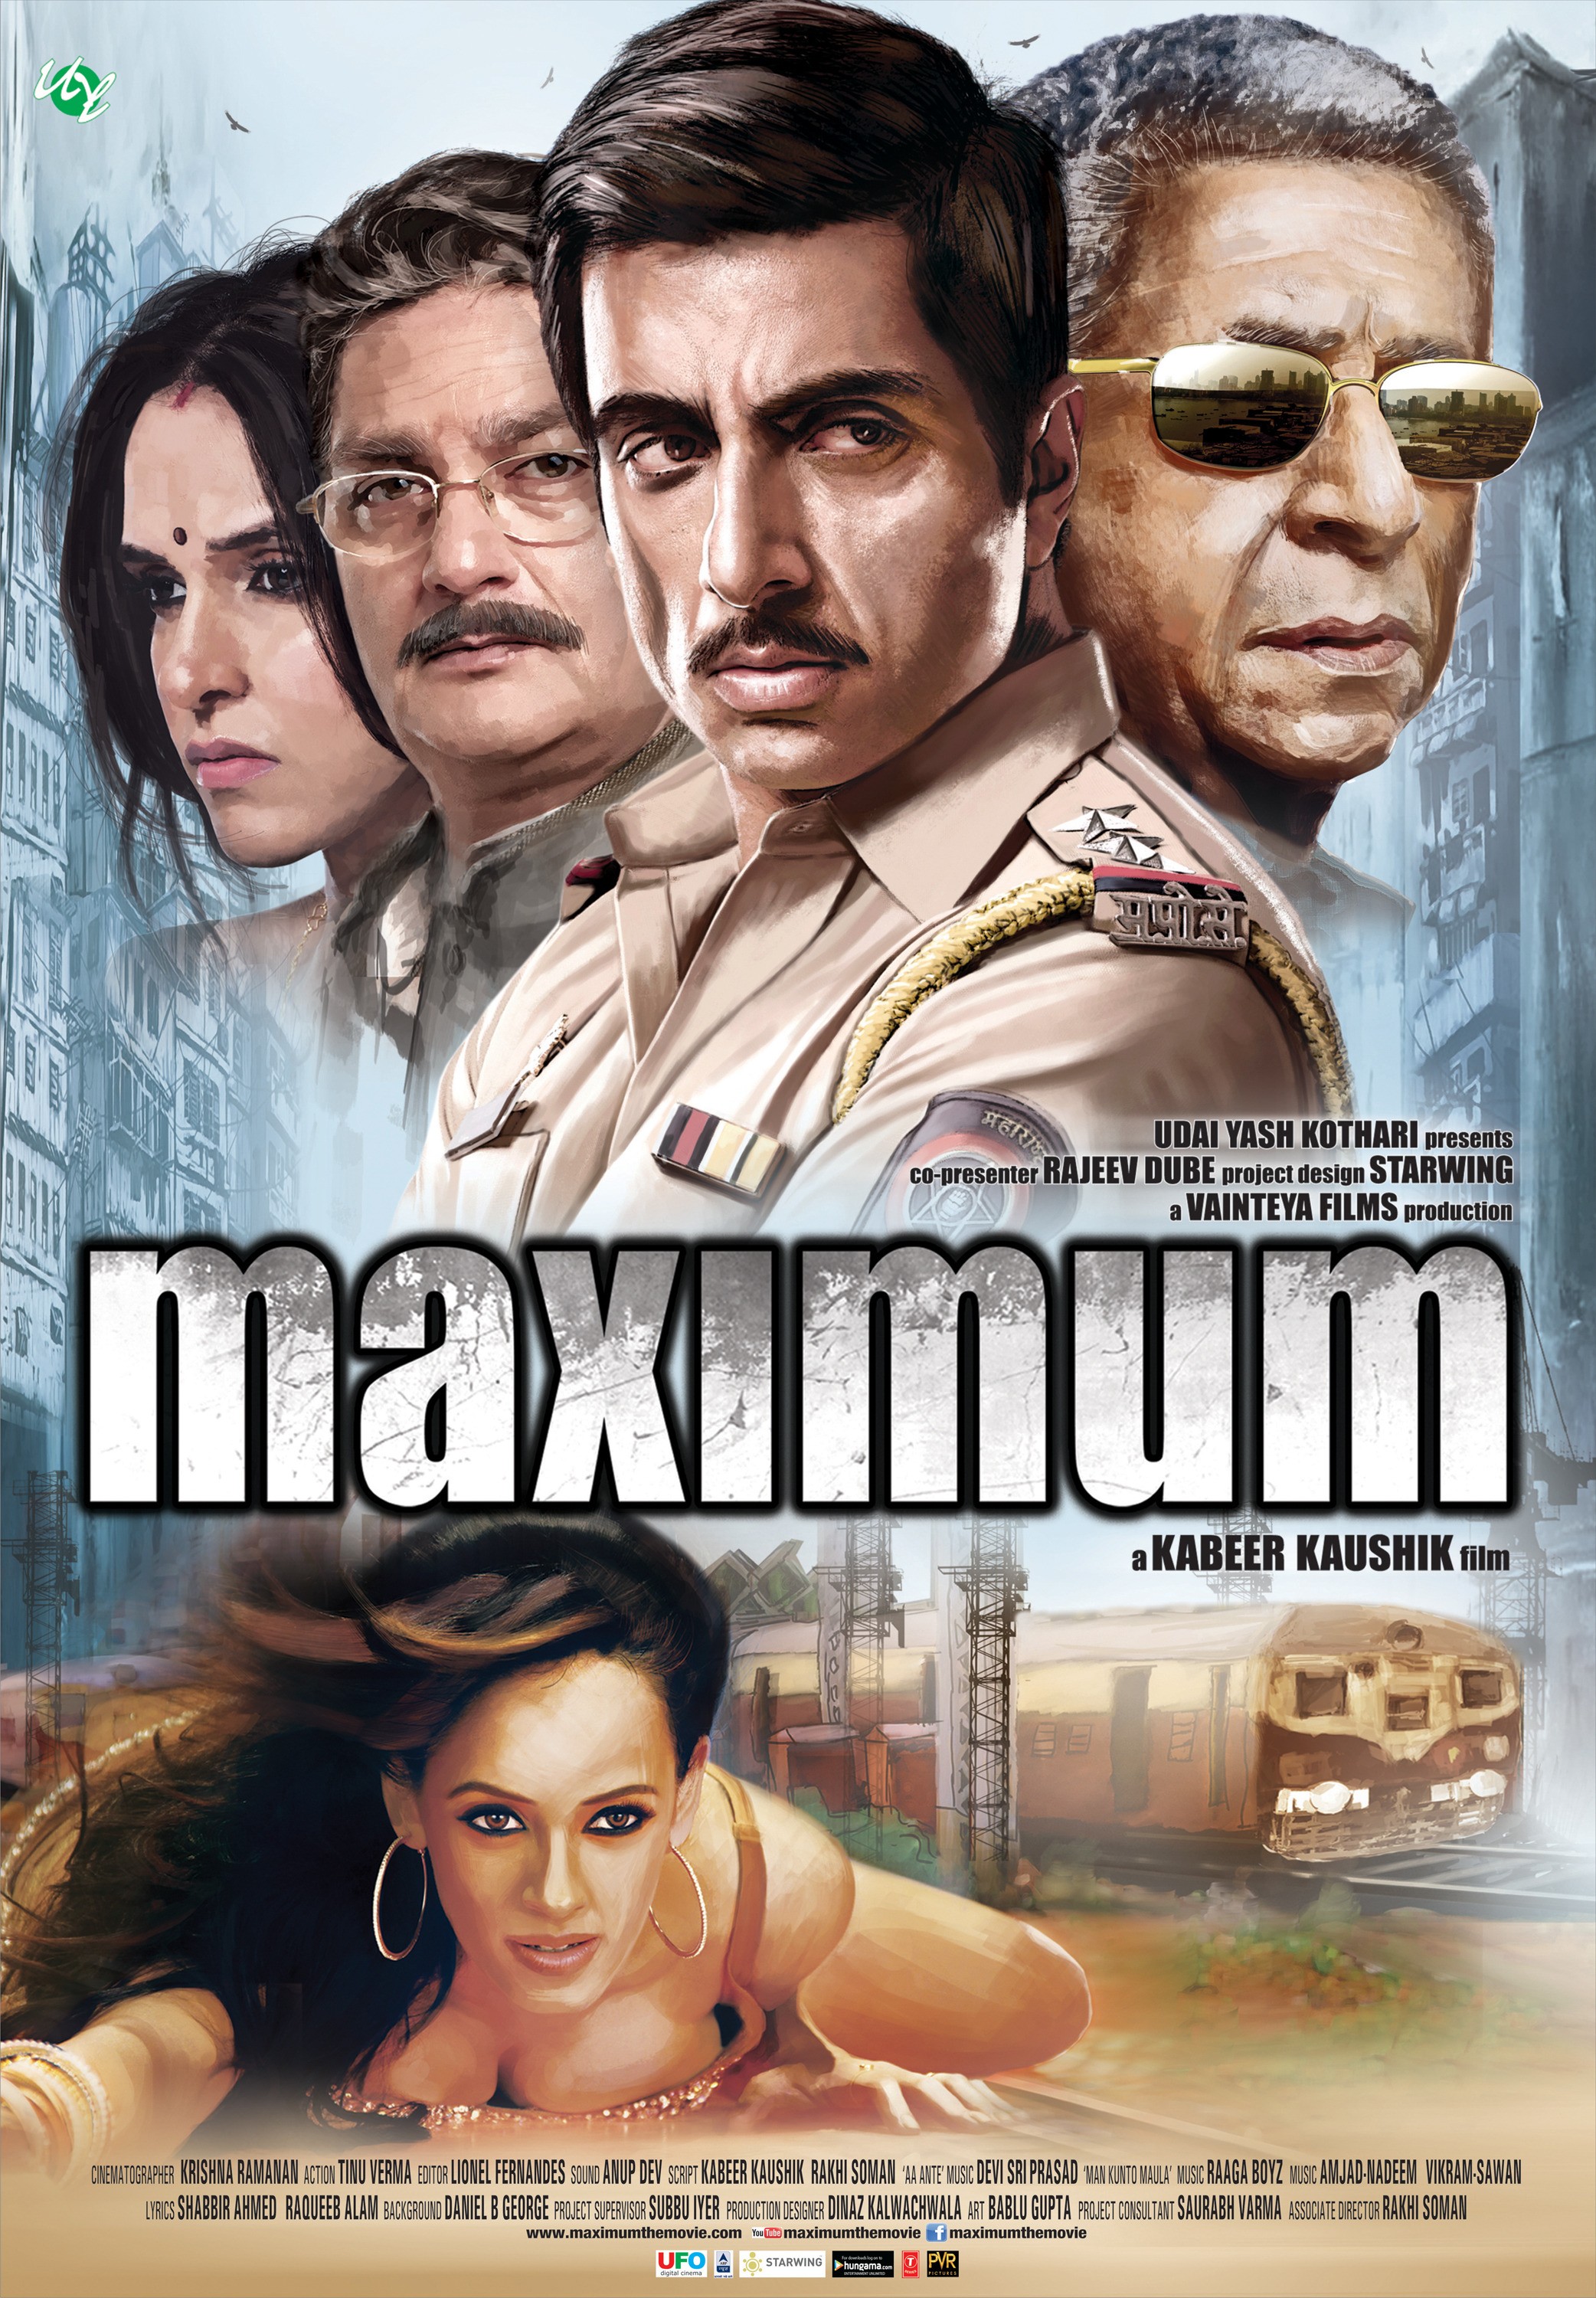 Mega Sized Movie Poster Image for Maximum (#2 of 2)